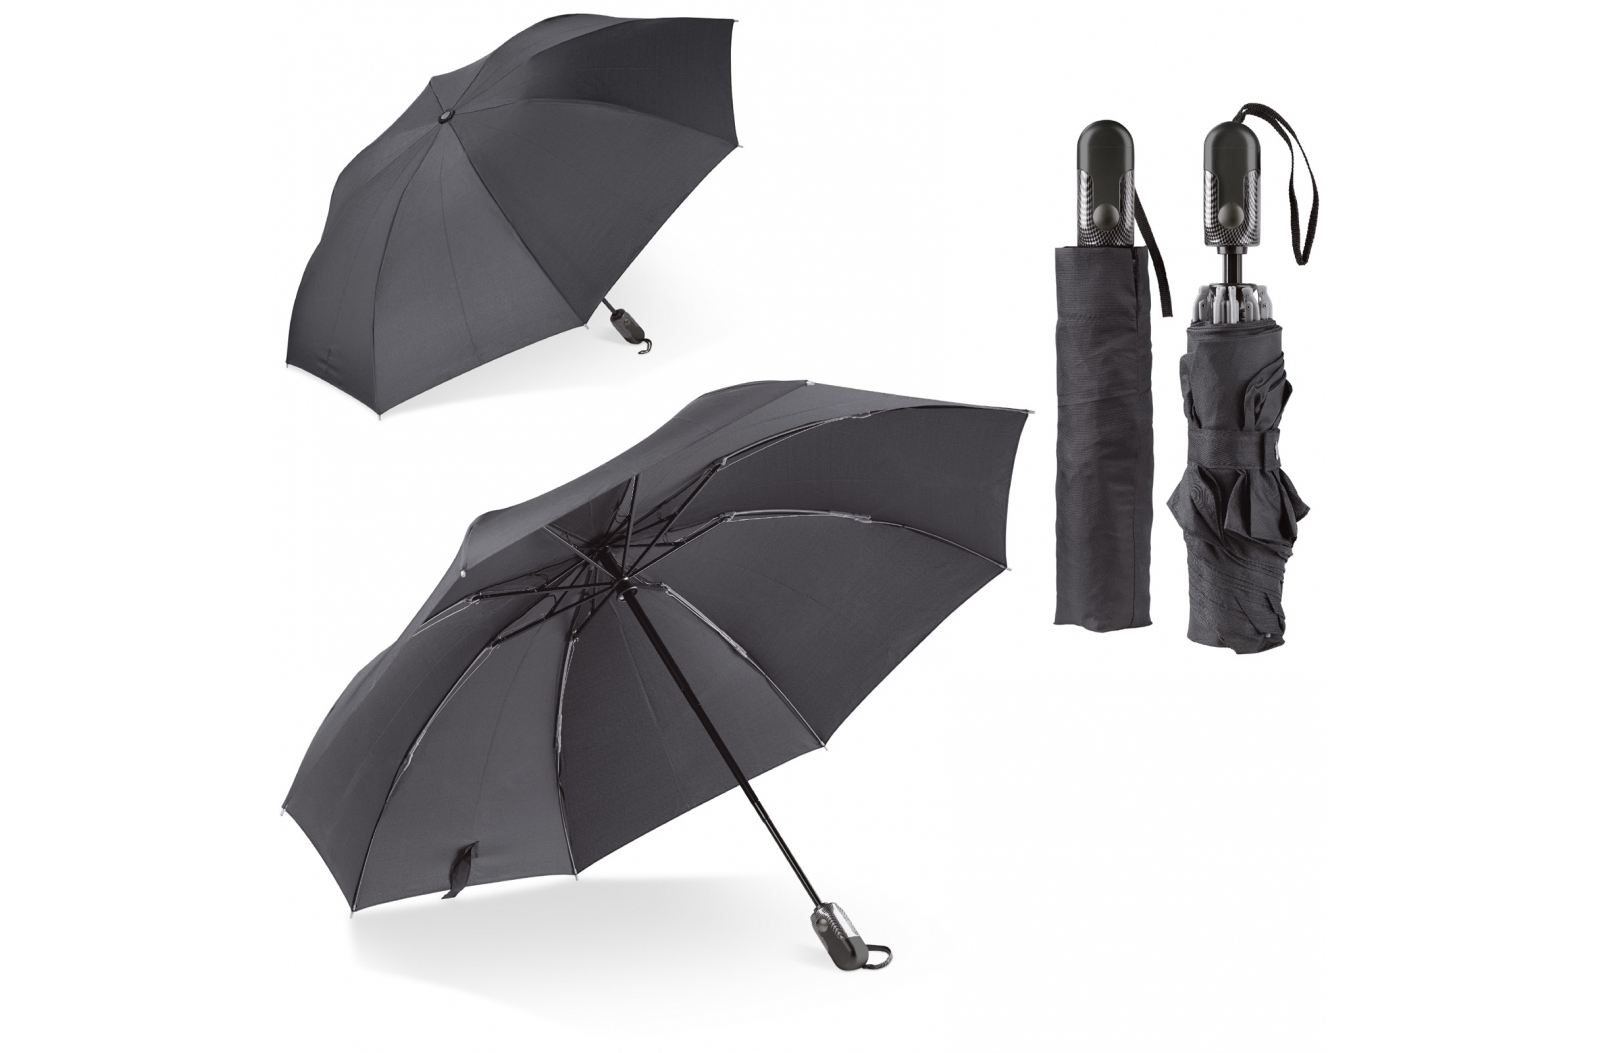 Parapluie Deluxe réversible 23” avec ouverture/fermeture automatique - Zaprinta France